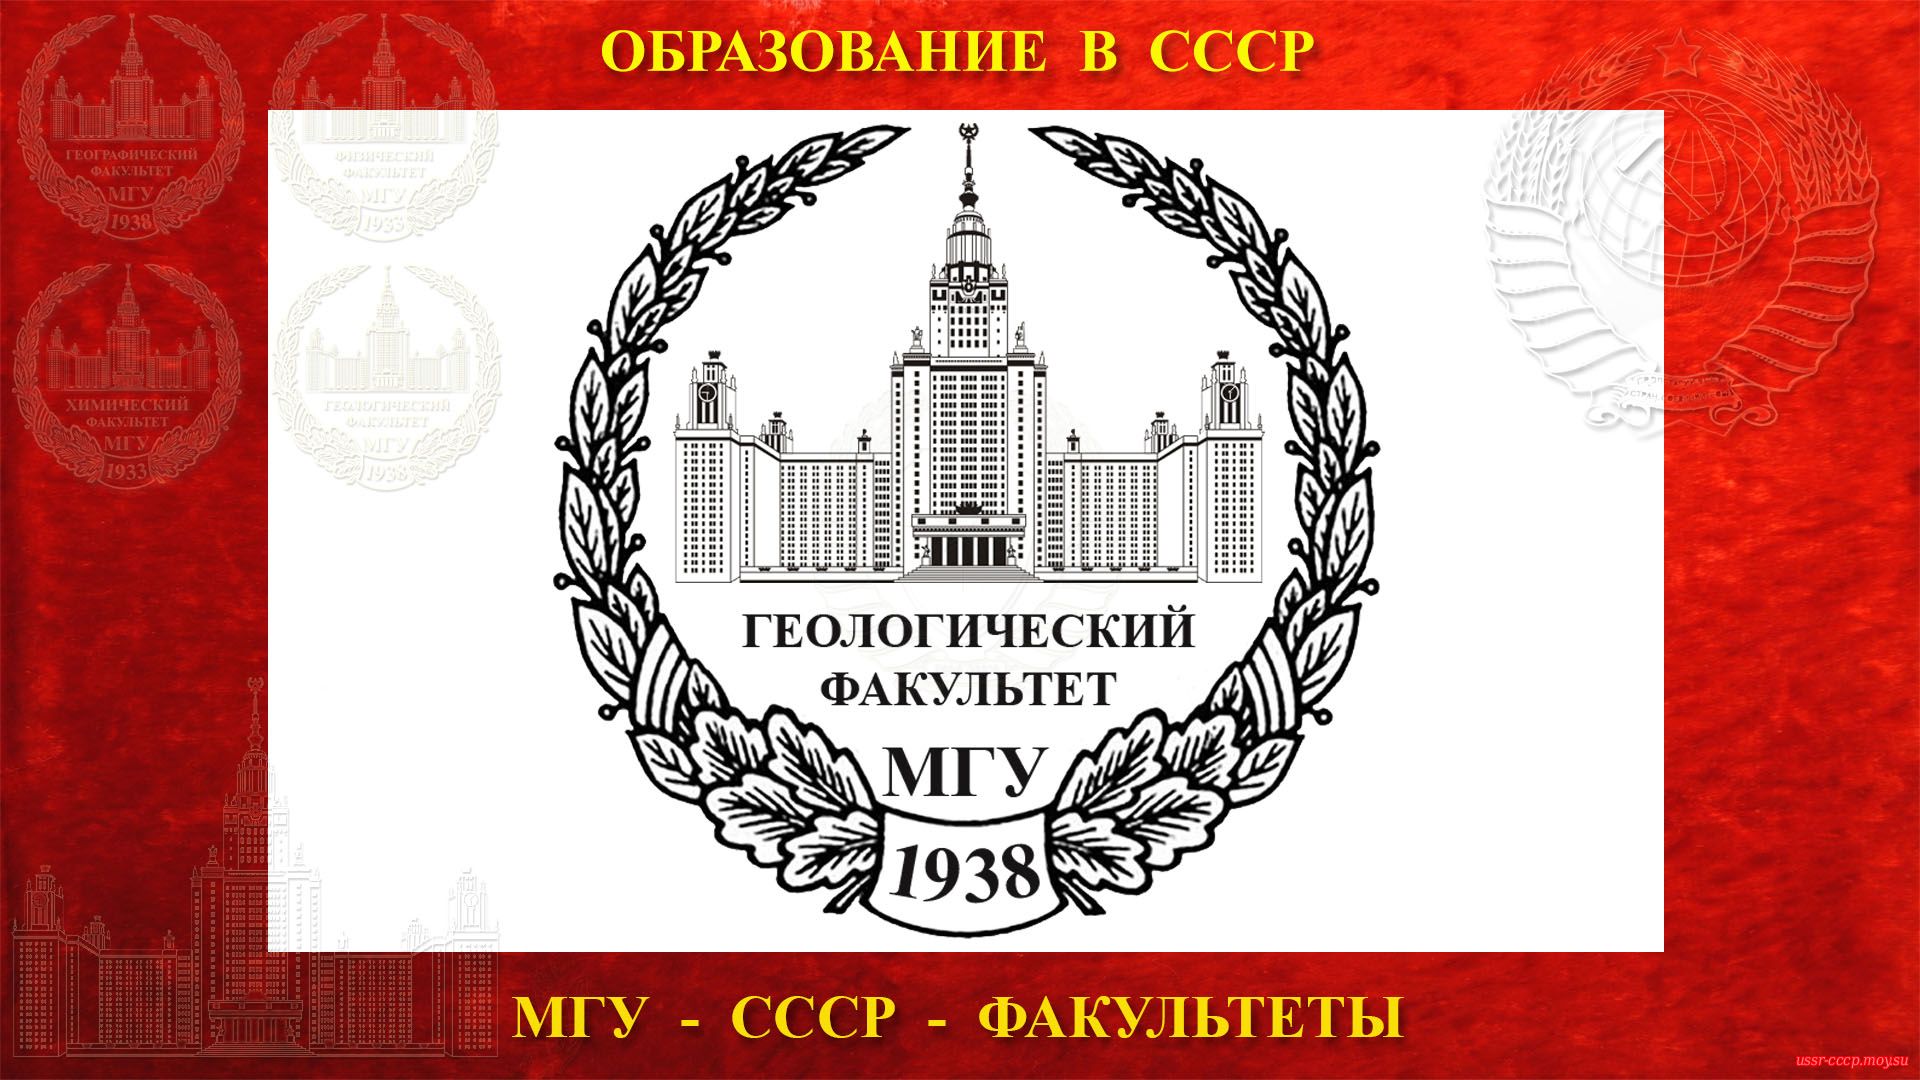 Геологический факультет МГУ — (23.07.1938)